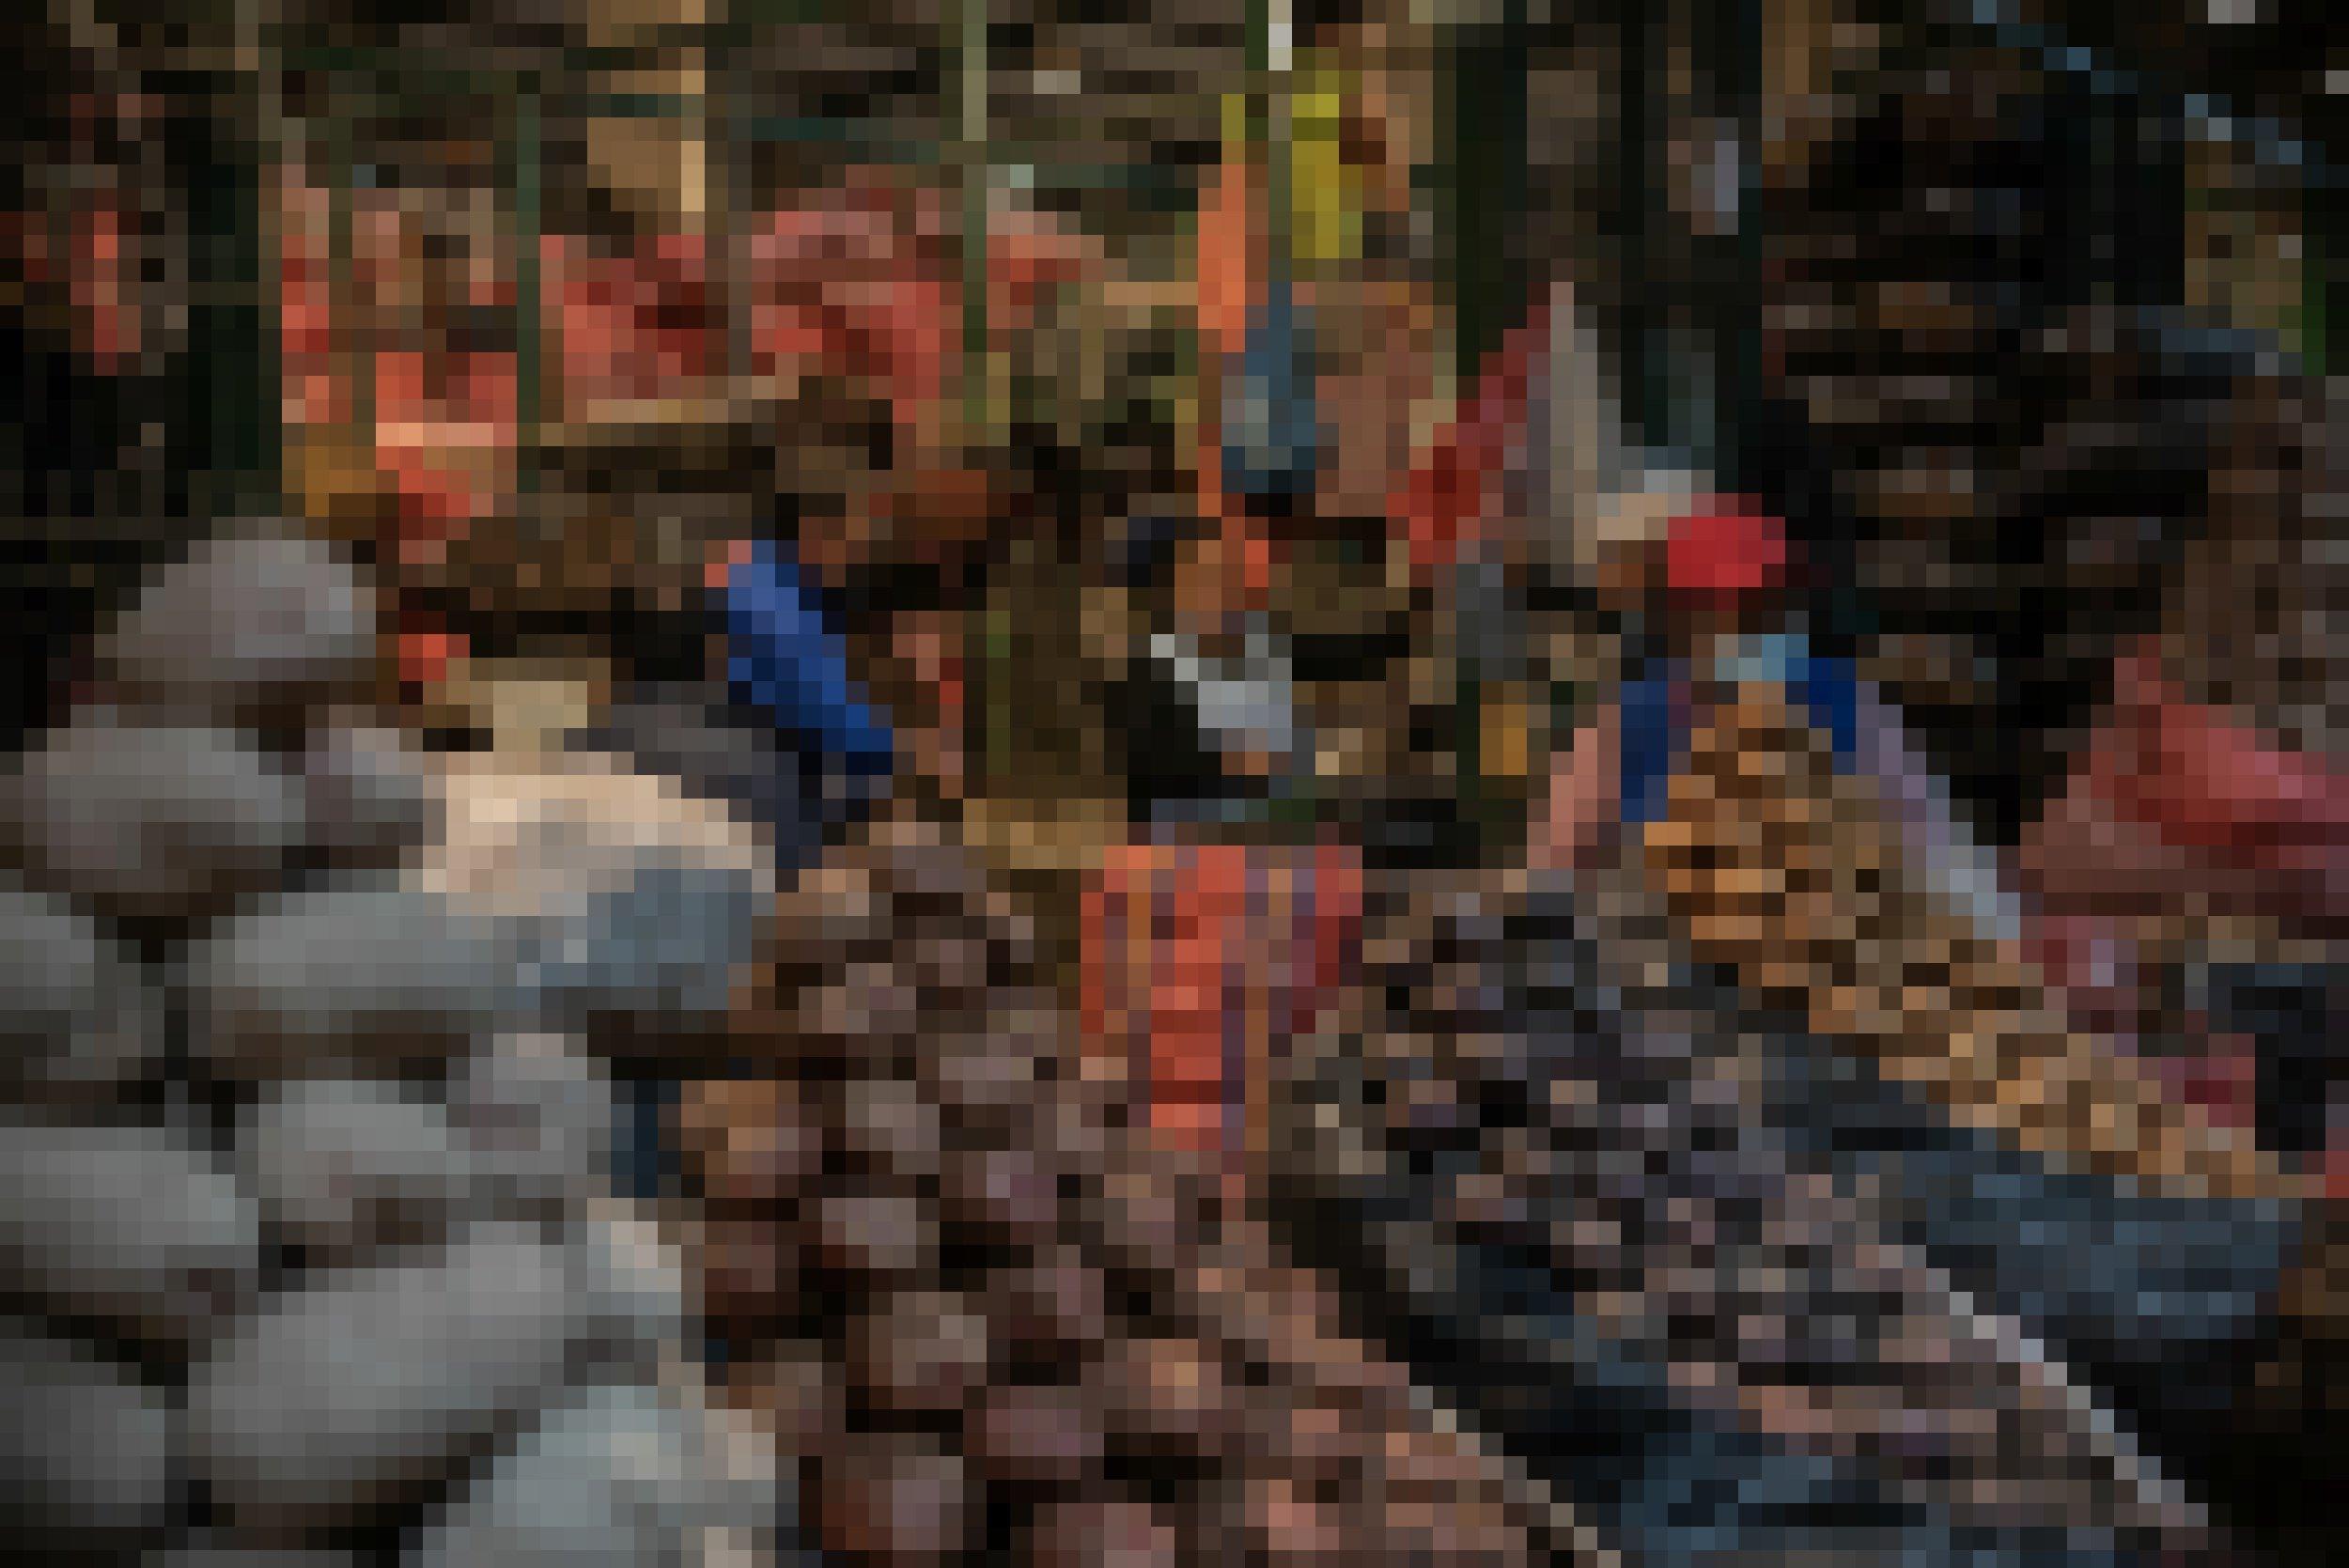 Eine Markthalle des Nachts, schummriges Licht. Im Vordergrund nach Sorten aufgestapelte Kartoffeln, dahinter Marktfrauen und noch meterhohe Stapel mit gefüllten Kartoffelsäcken.